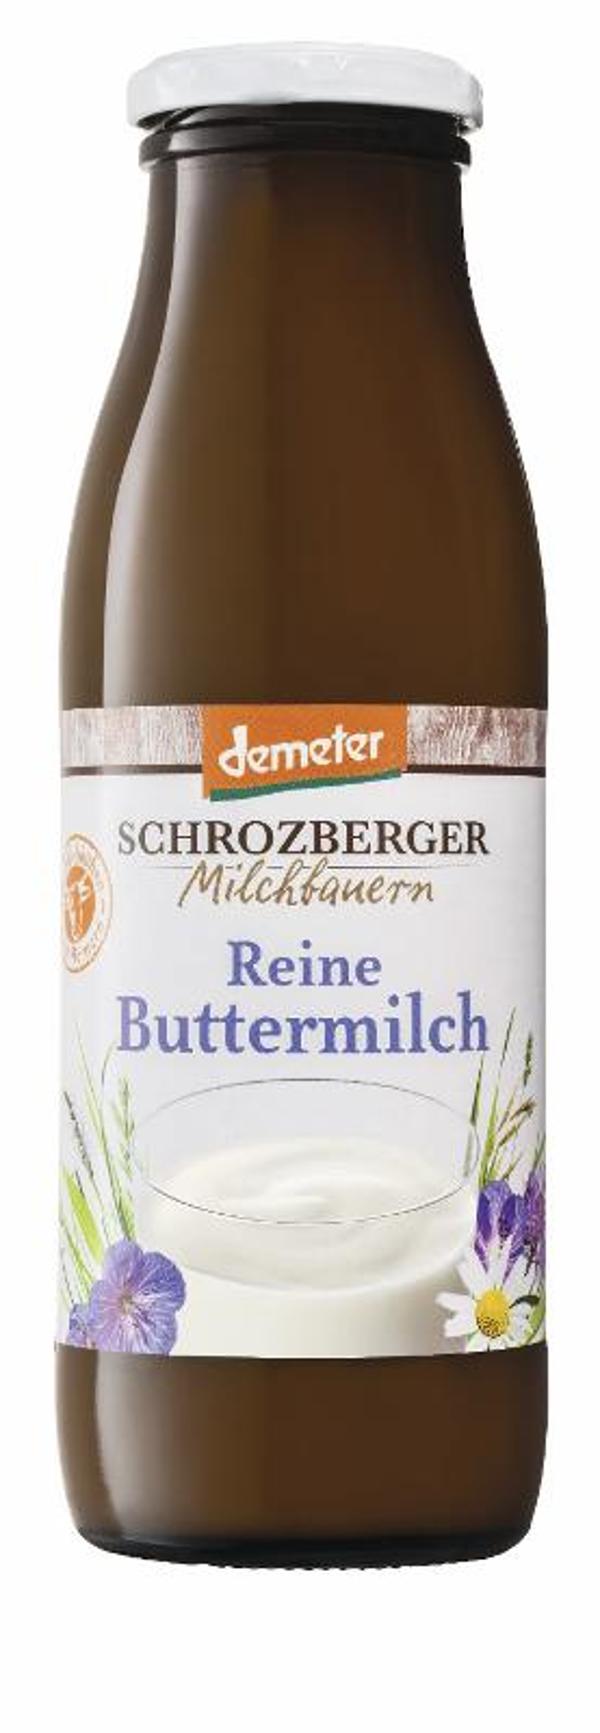 Produktfoto zu Buttermilch 0,5l Schrozberger